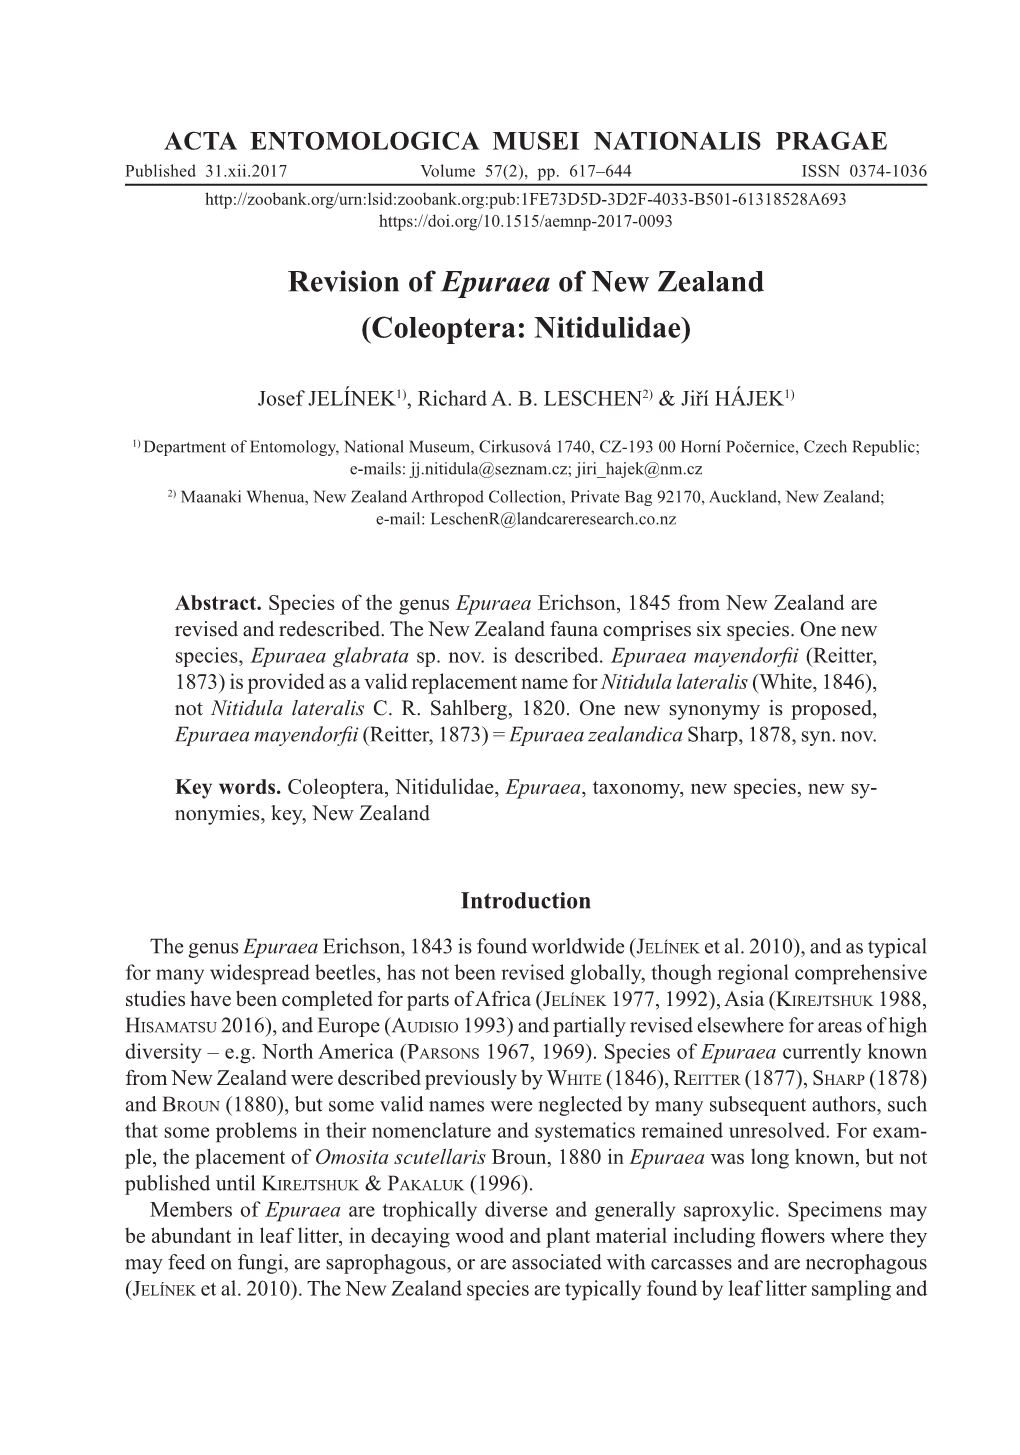 Revision of Epuraea of New Zealand (Coleoptera: Nitidulidae)